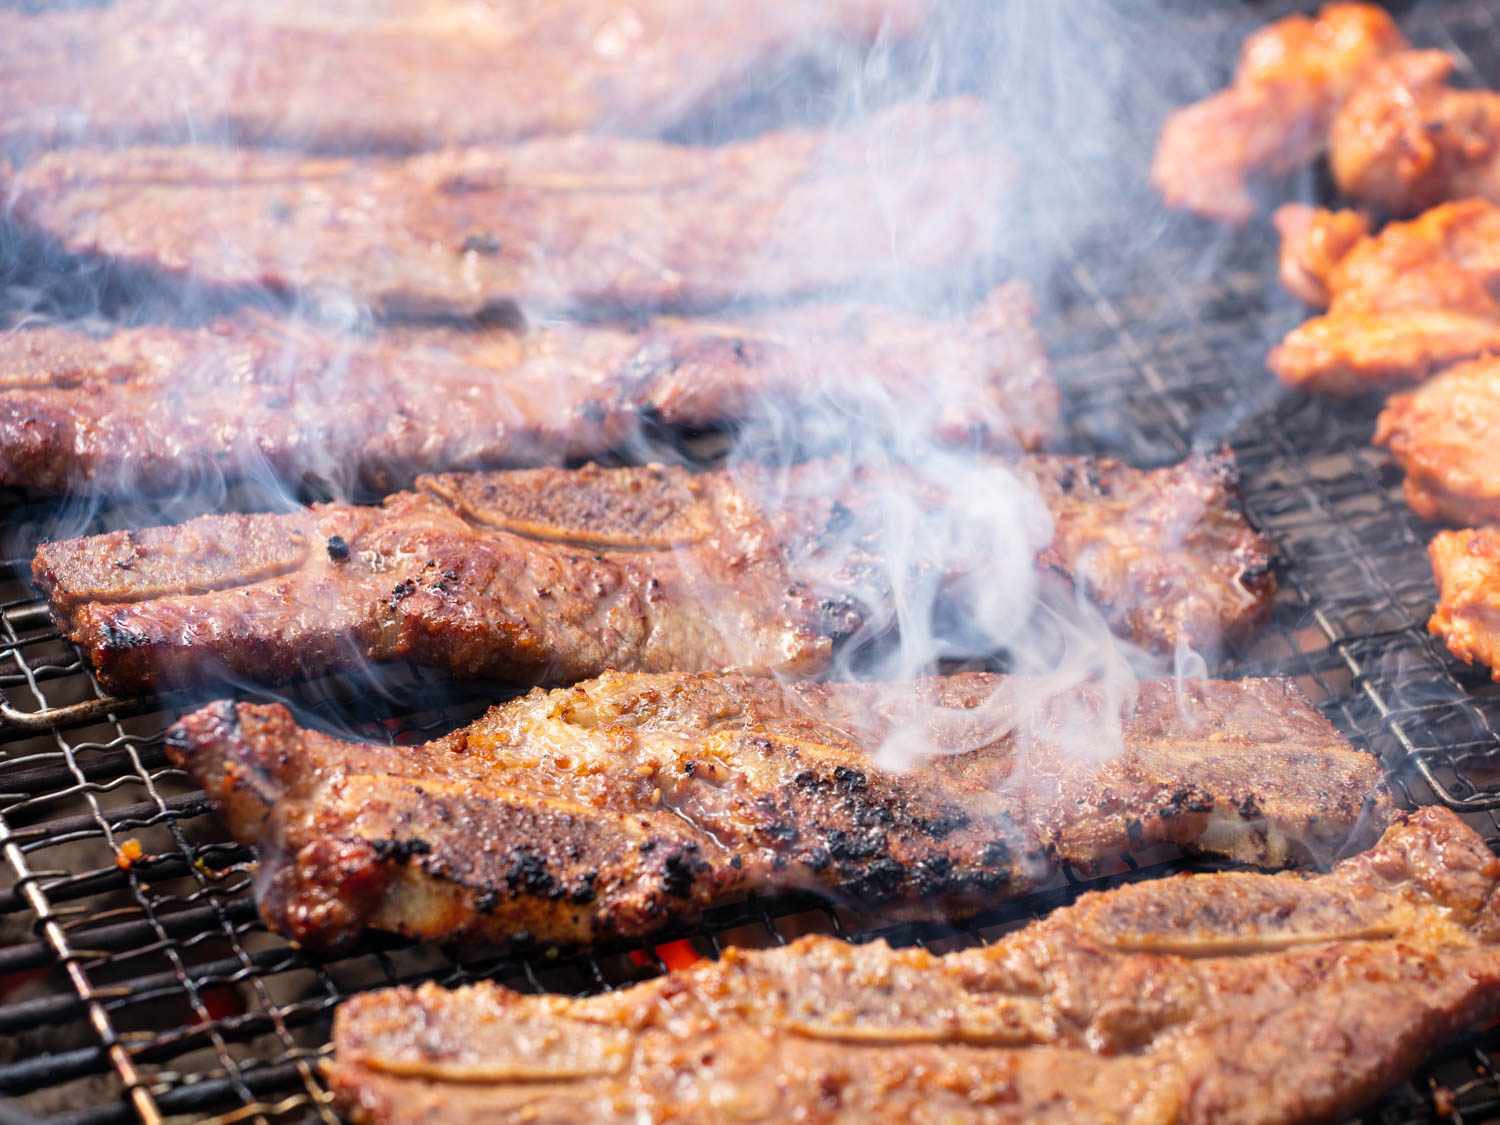 一缕缕烟雾缭绕着烤架上烤着的牛肉块。